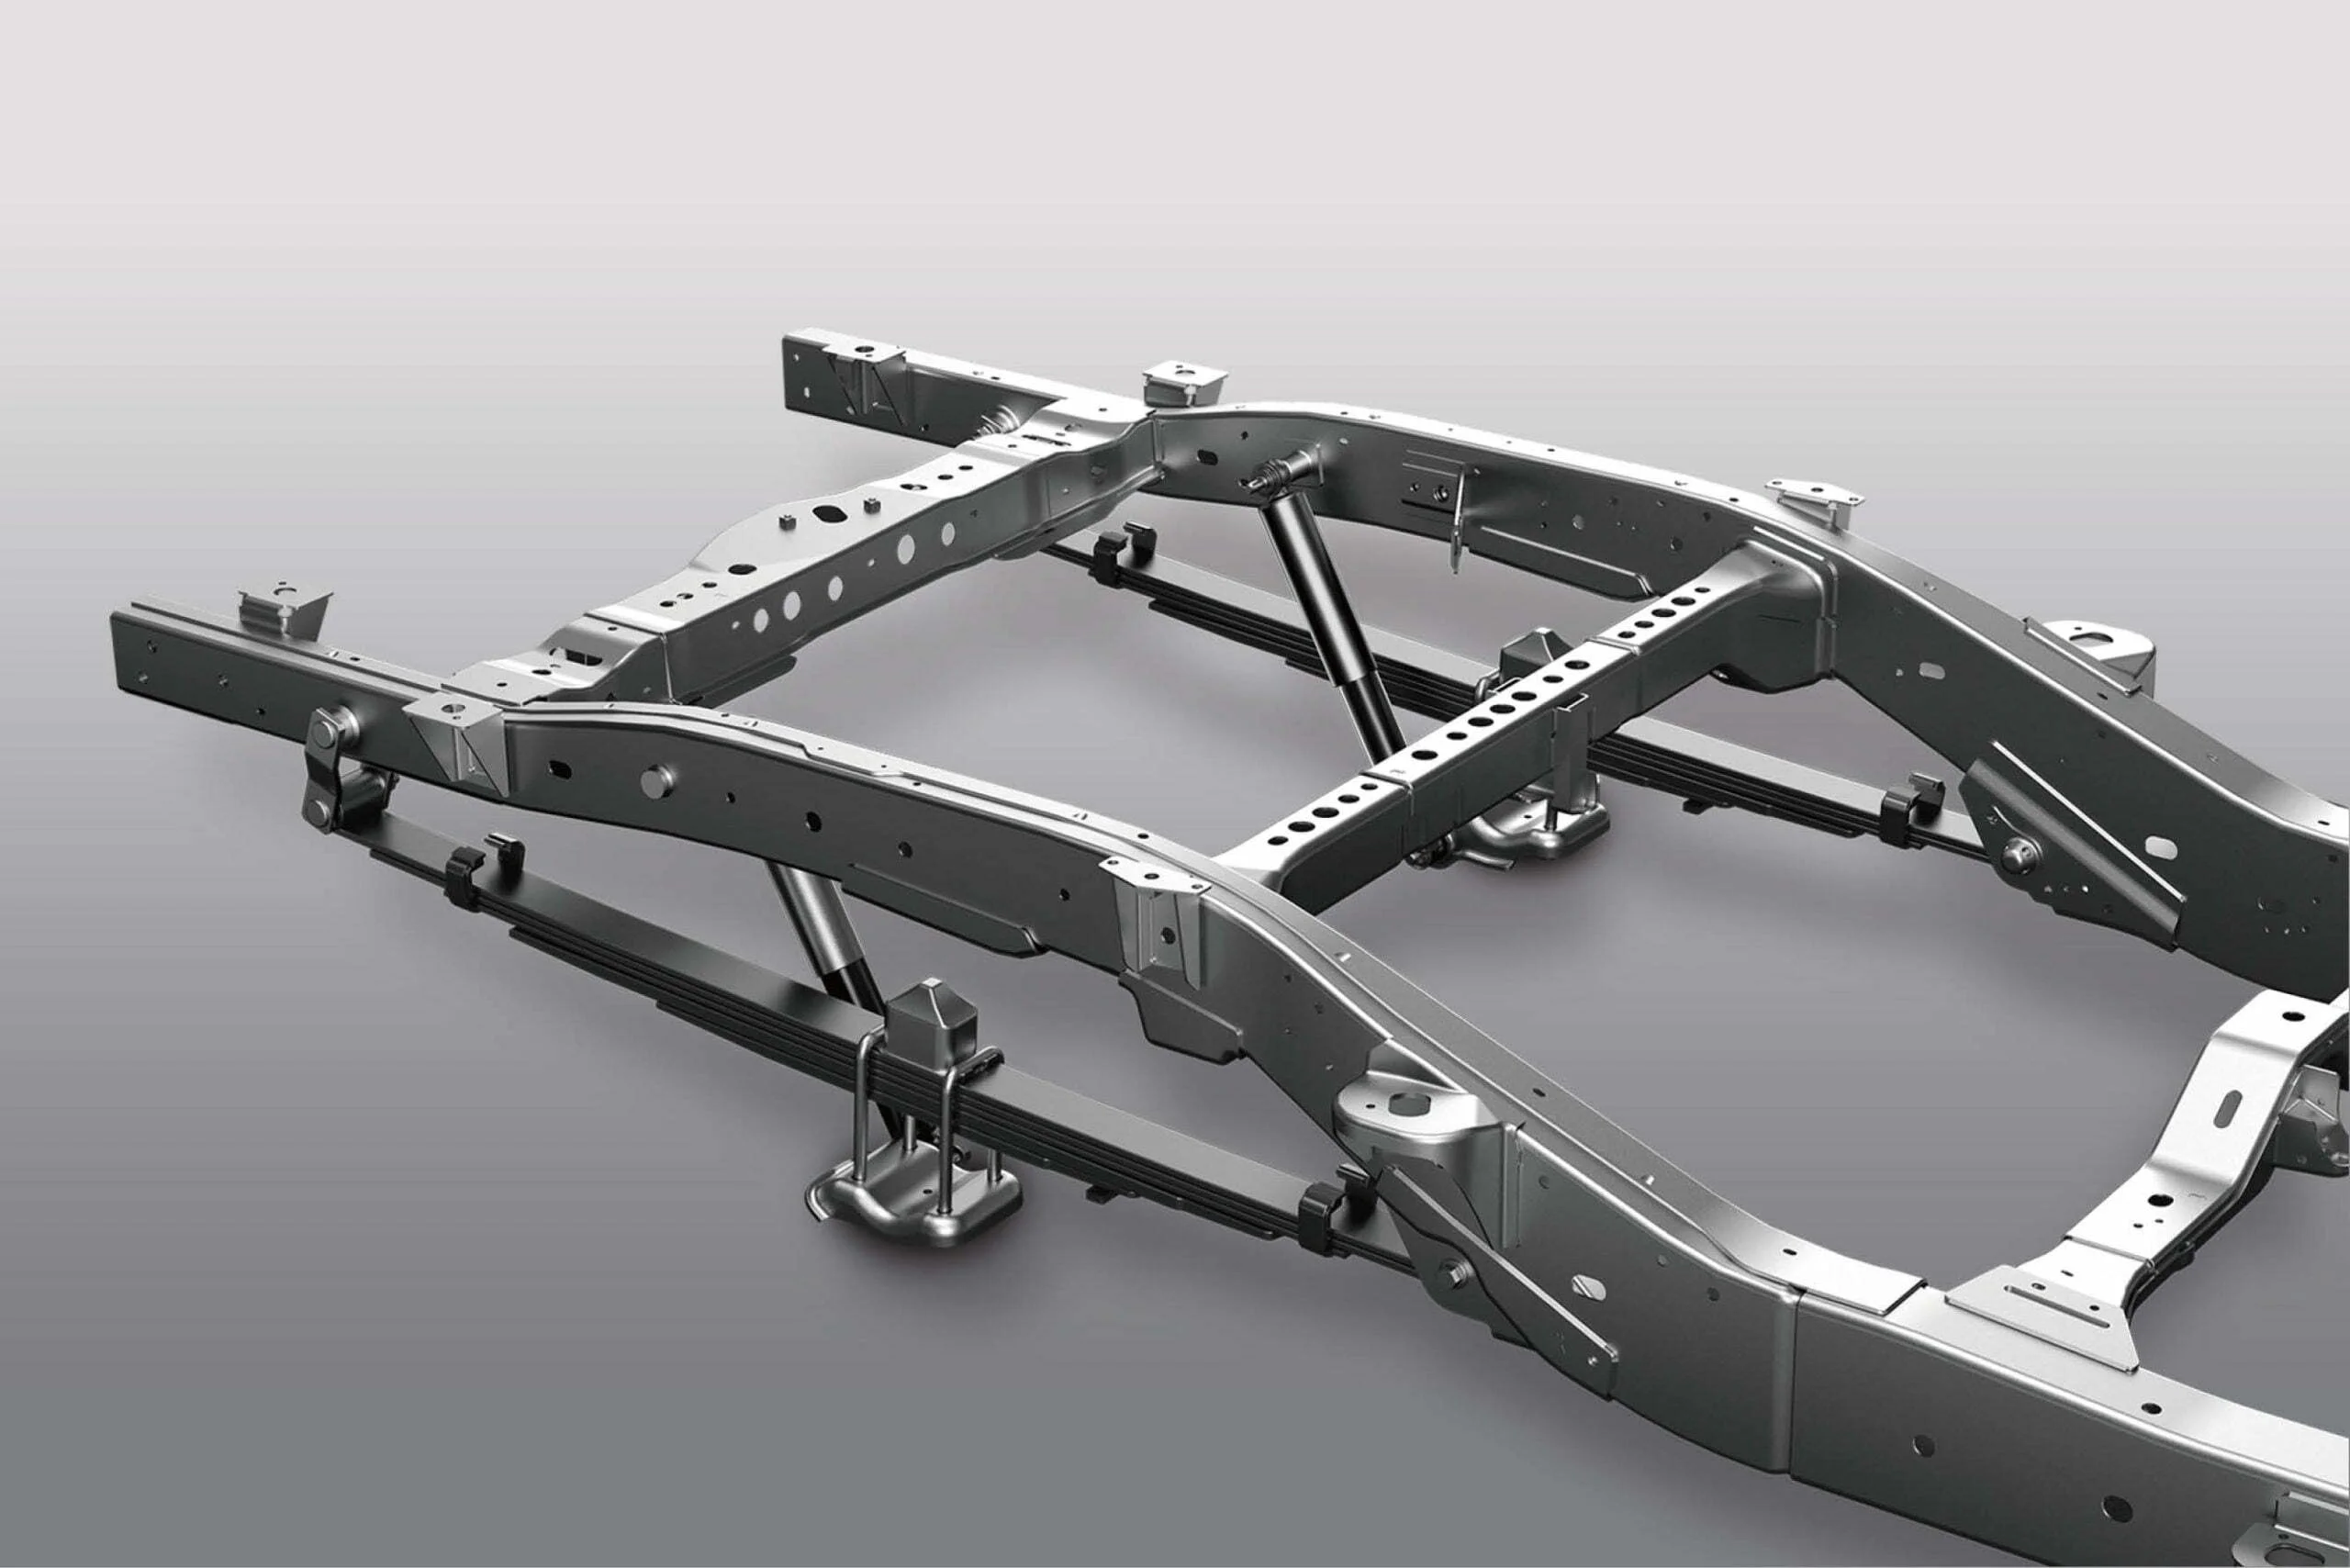 El acero de alta resistencia y la soldadura robótica completa, que dan como resultado un aumento del 30% en la rigidez, permiten una capacidad superior de remolque del vehículo Maxus T60